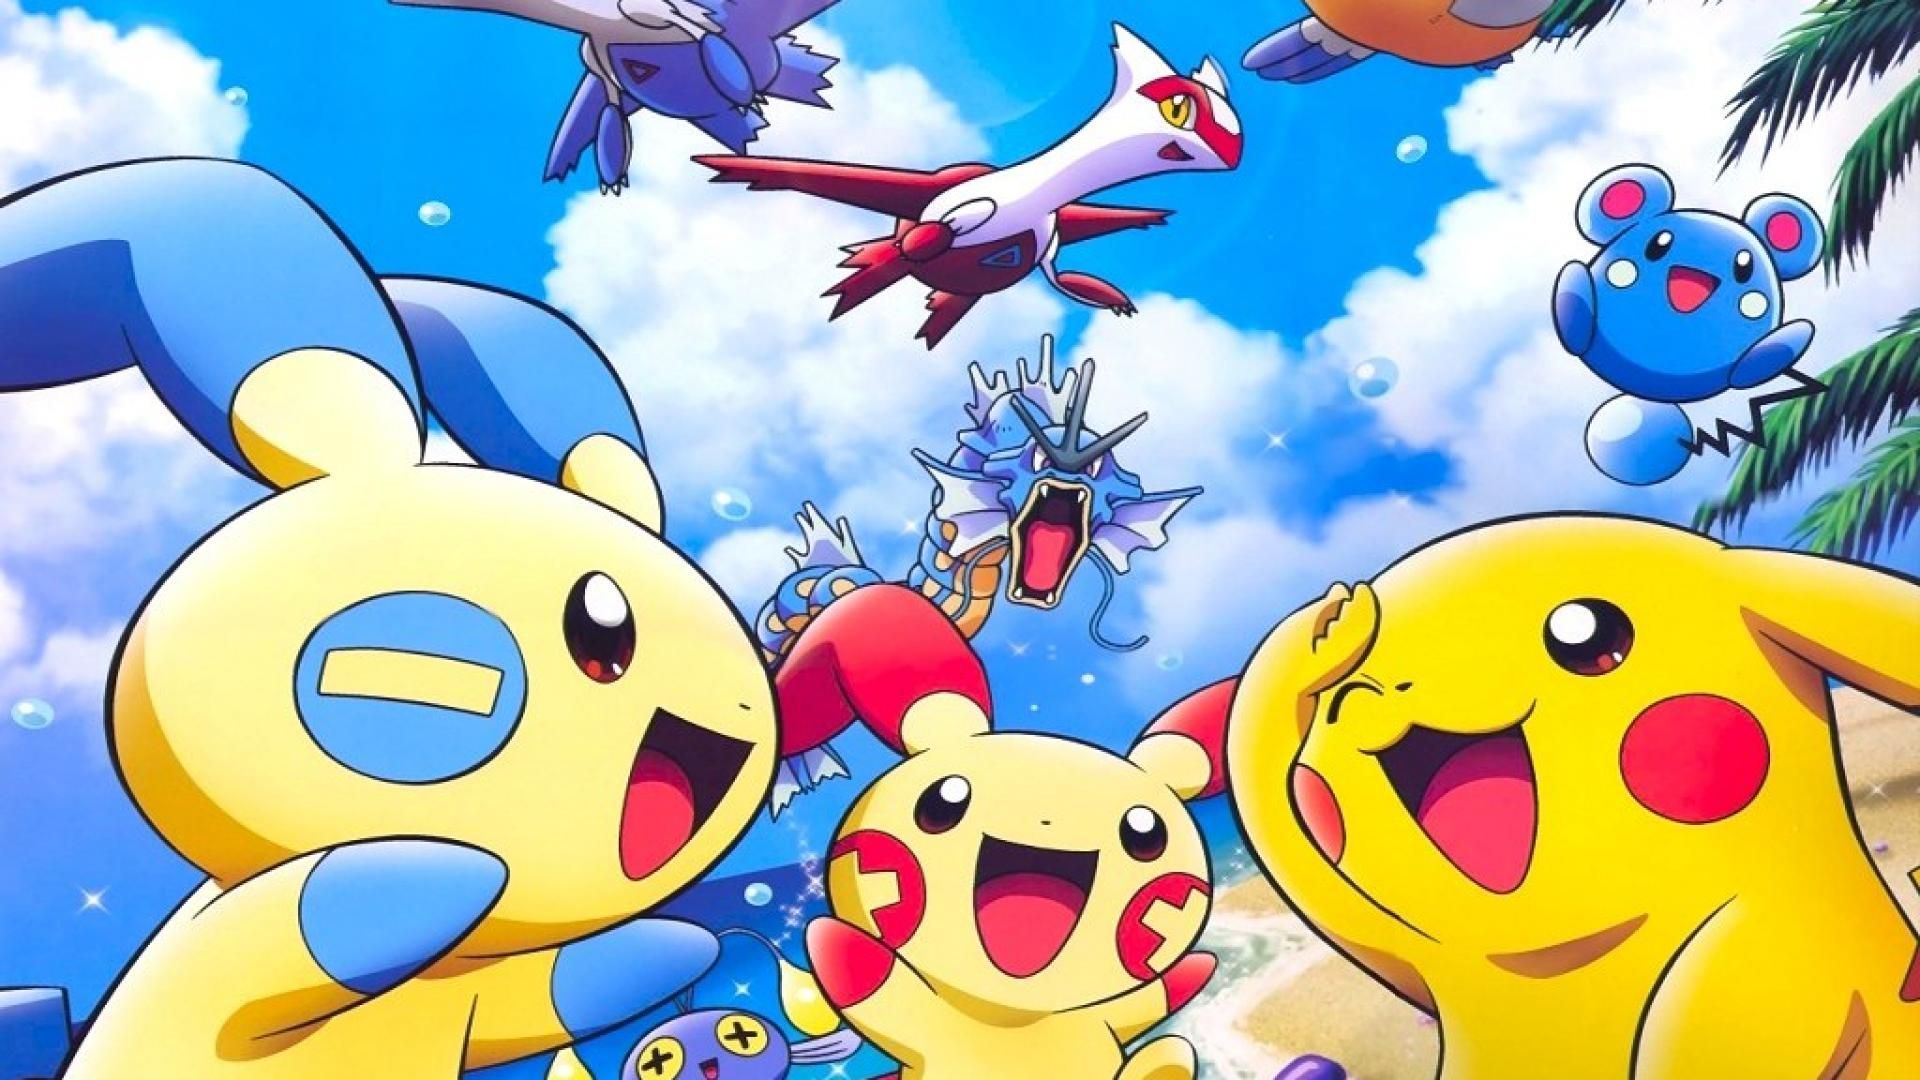 Cute Legendary Pokemon Wallpaper Free Cute Legendary Pokemon Background